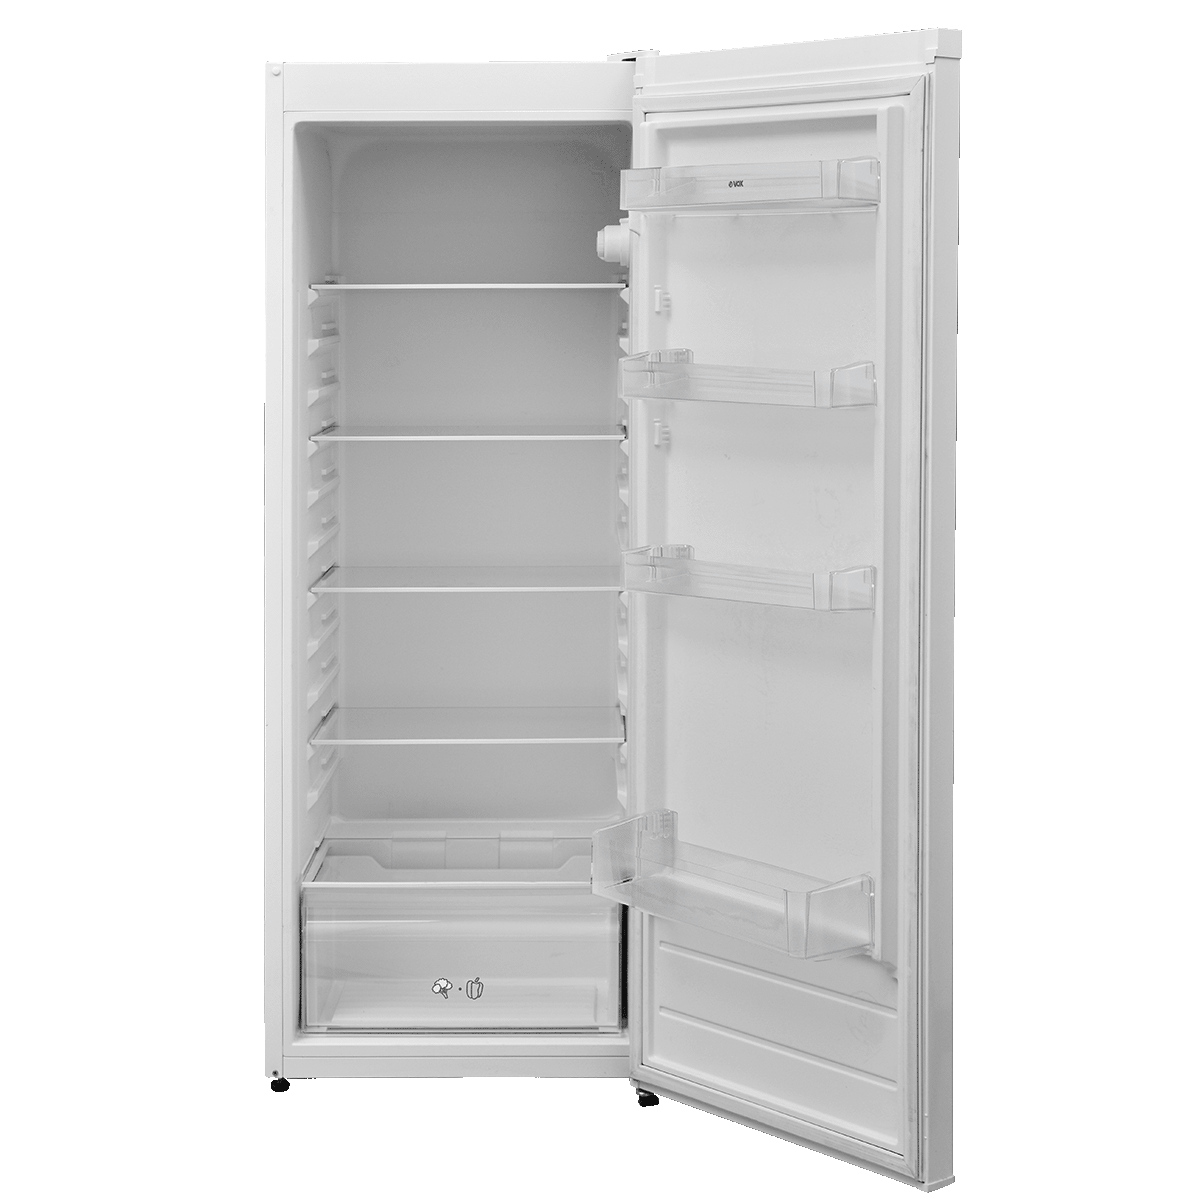 Refrigerator KS 2830 F 